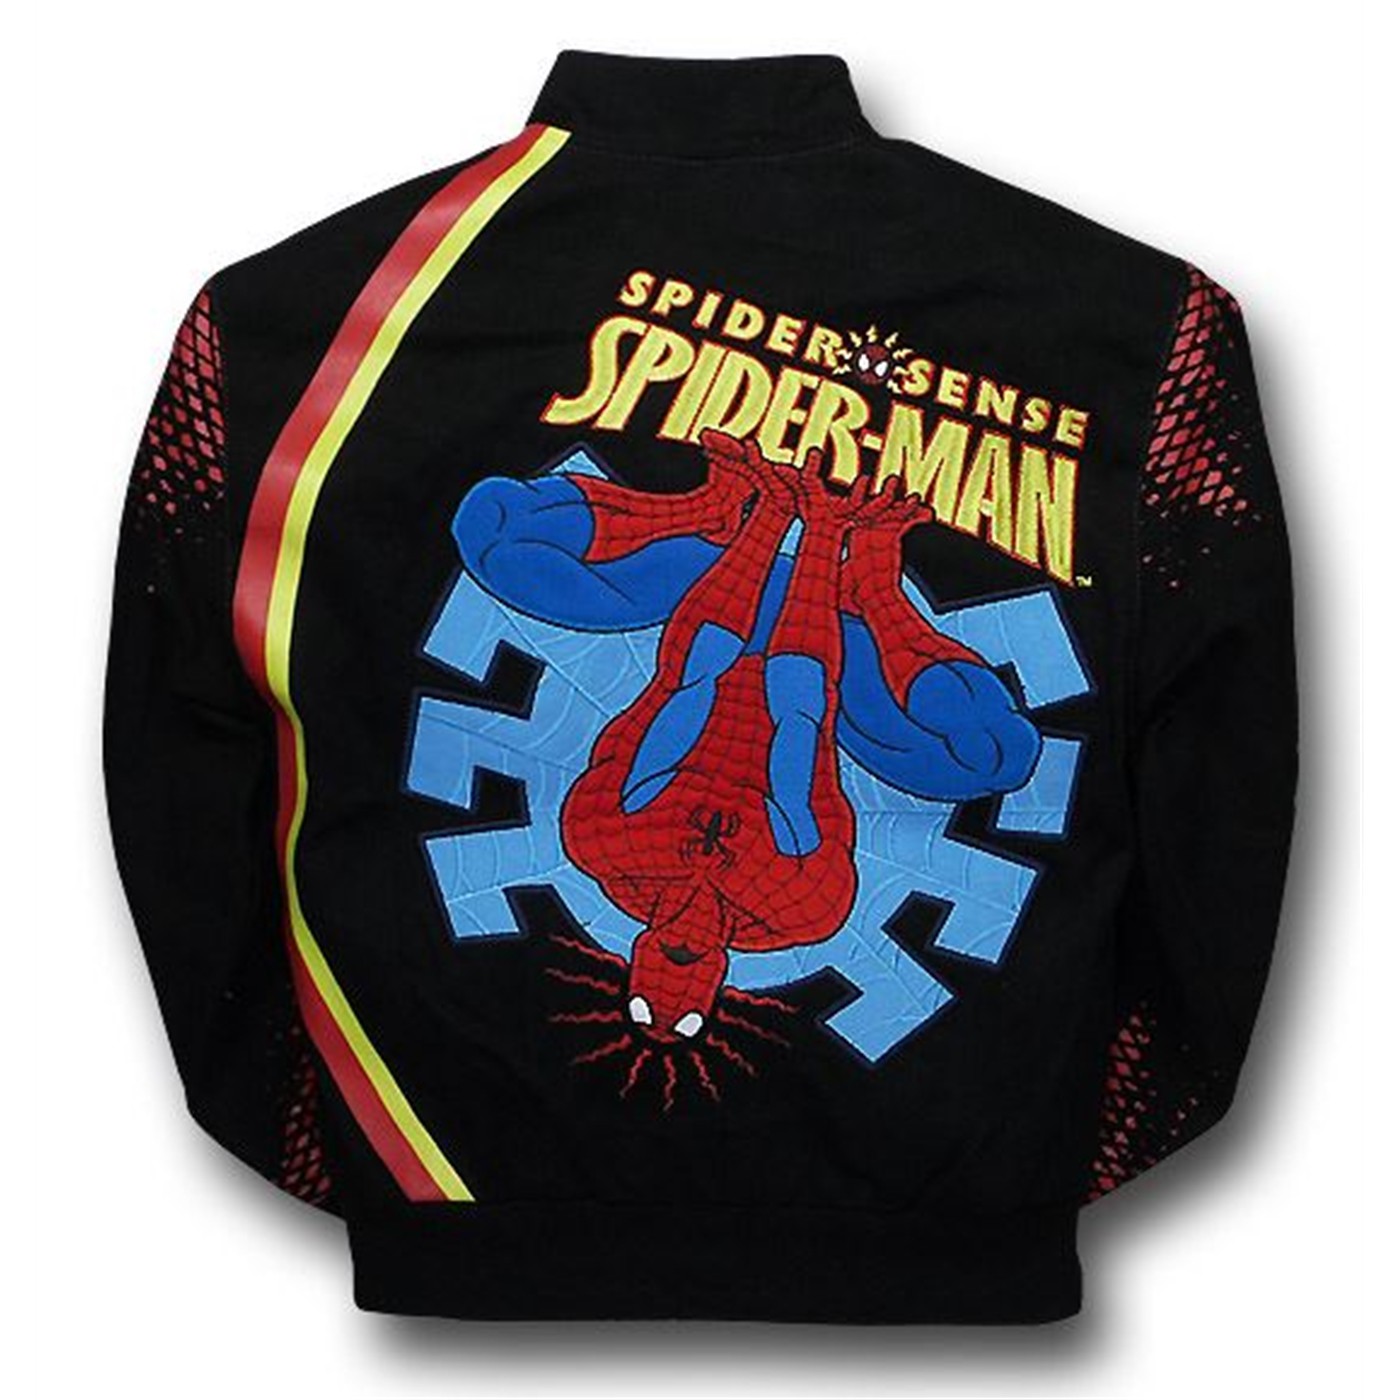 Spiderman Spider Sense Kids Jacket